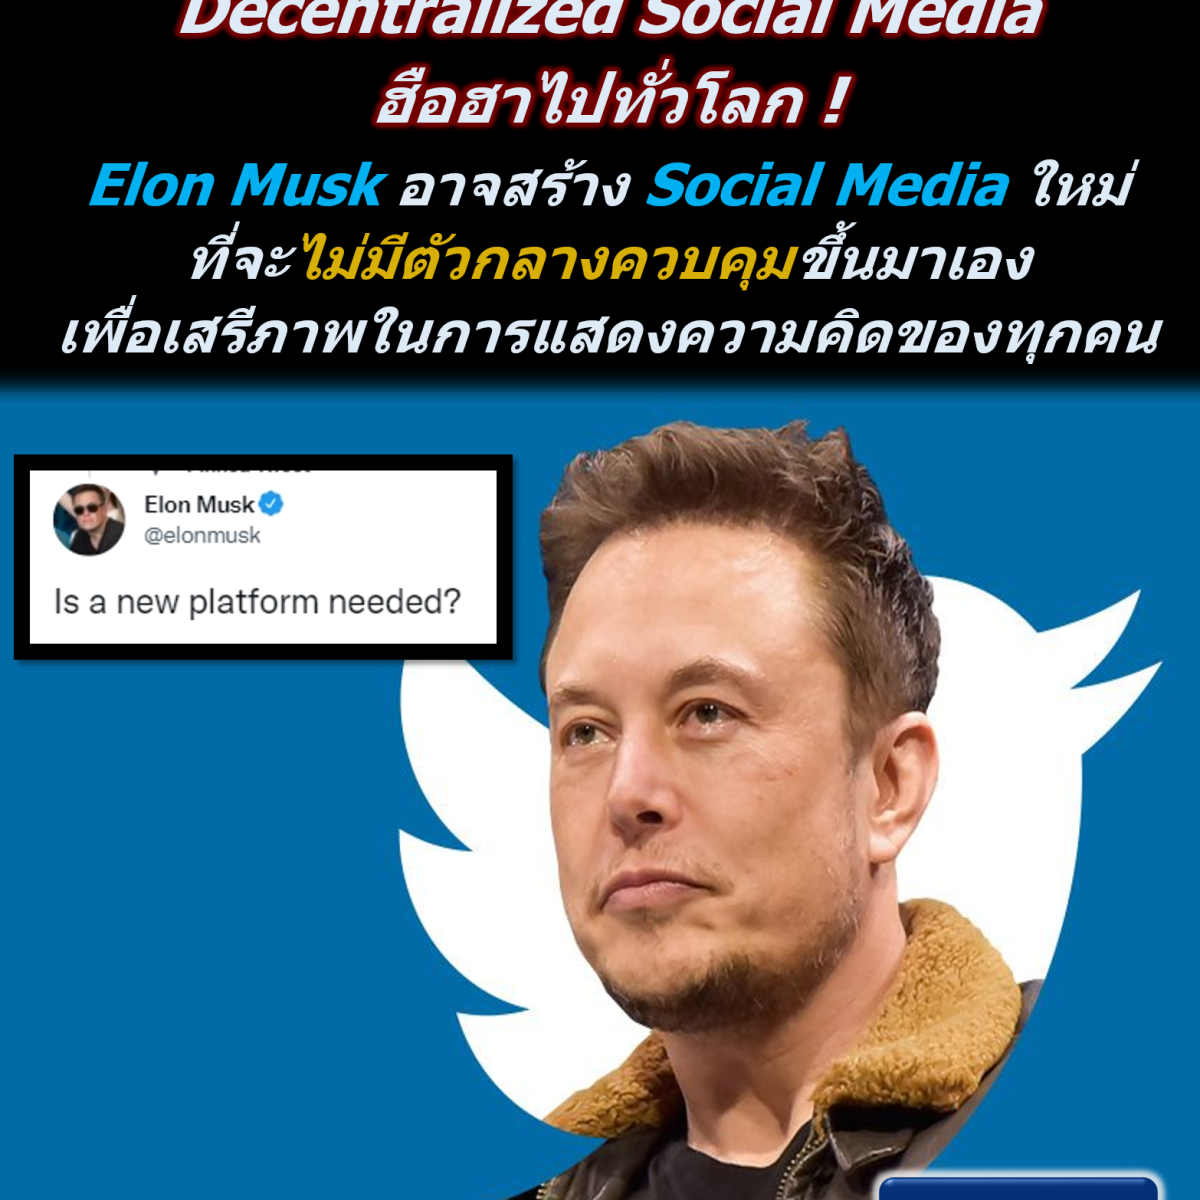 ฮือฮาไปทั่วโลก ! Elon Musk อาจสร้าง Social Media ใหม่ขึ้นมา ที่จะไม่มีตัวกลางควบคุม หรือมาปิดกั้นเสรีภาพในการแสดงความคิดของเราทุกคน !